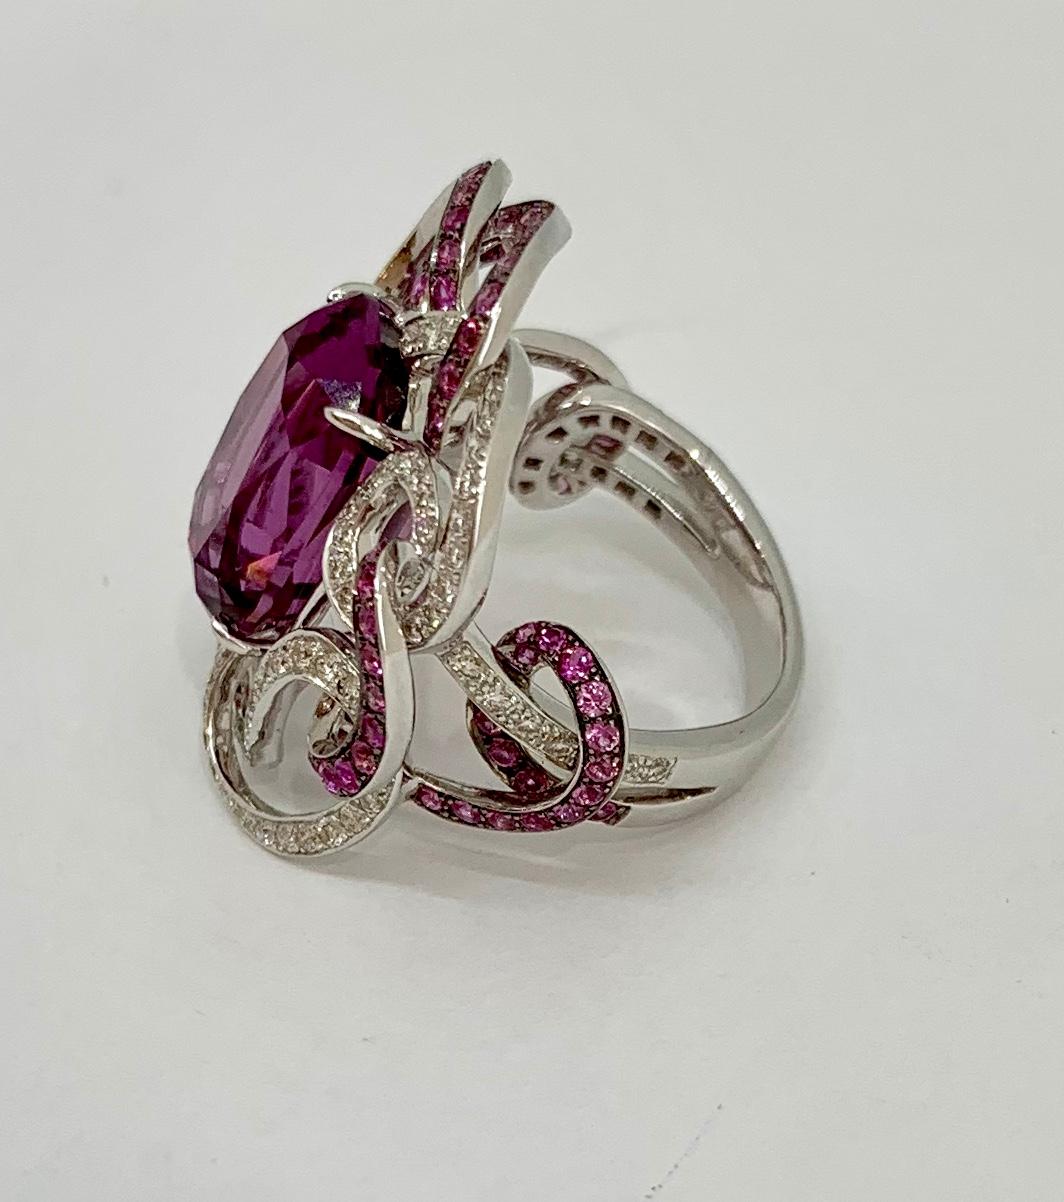 Margot McKinney 18K Gold 10.40ct Pink Garnet Ring with Diamonds, Pink Sapphires In New Condition In Brisbane AU , Queensland